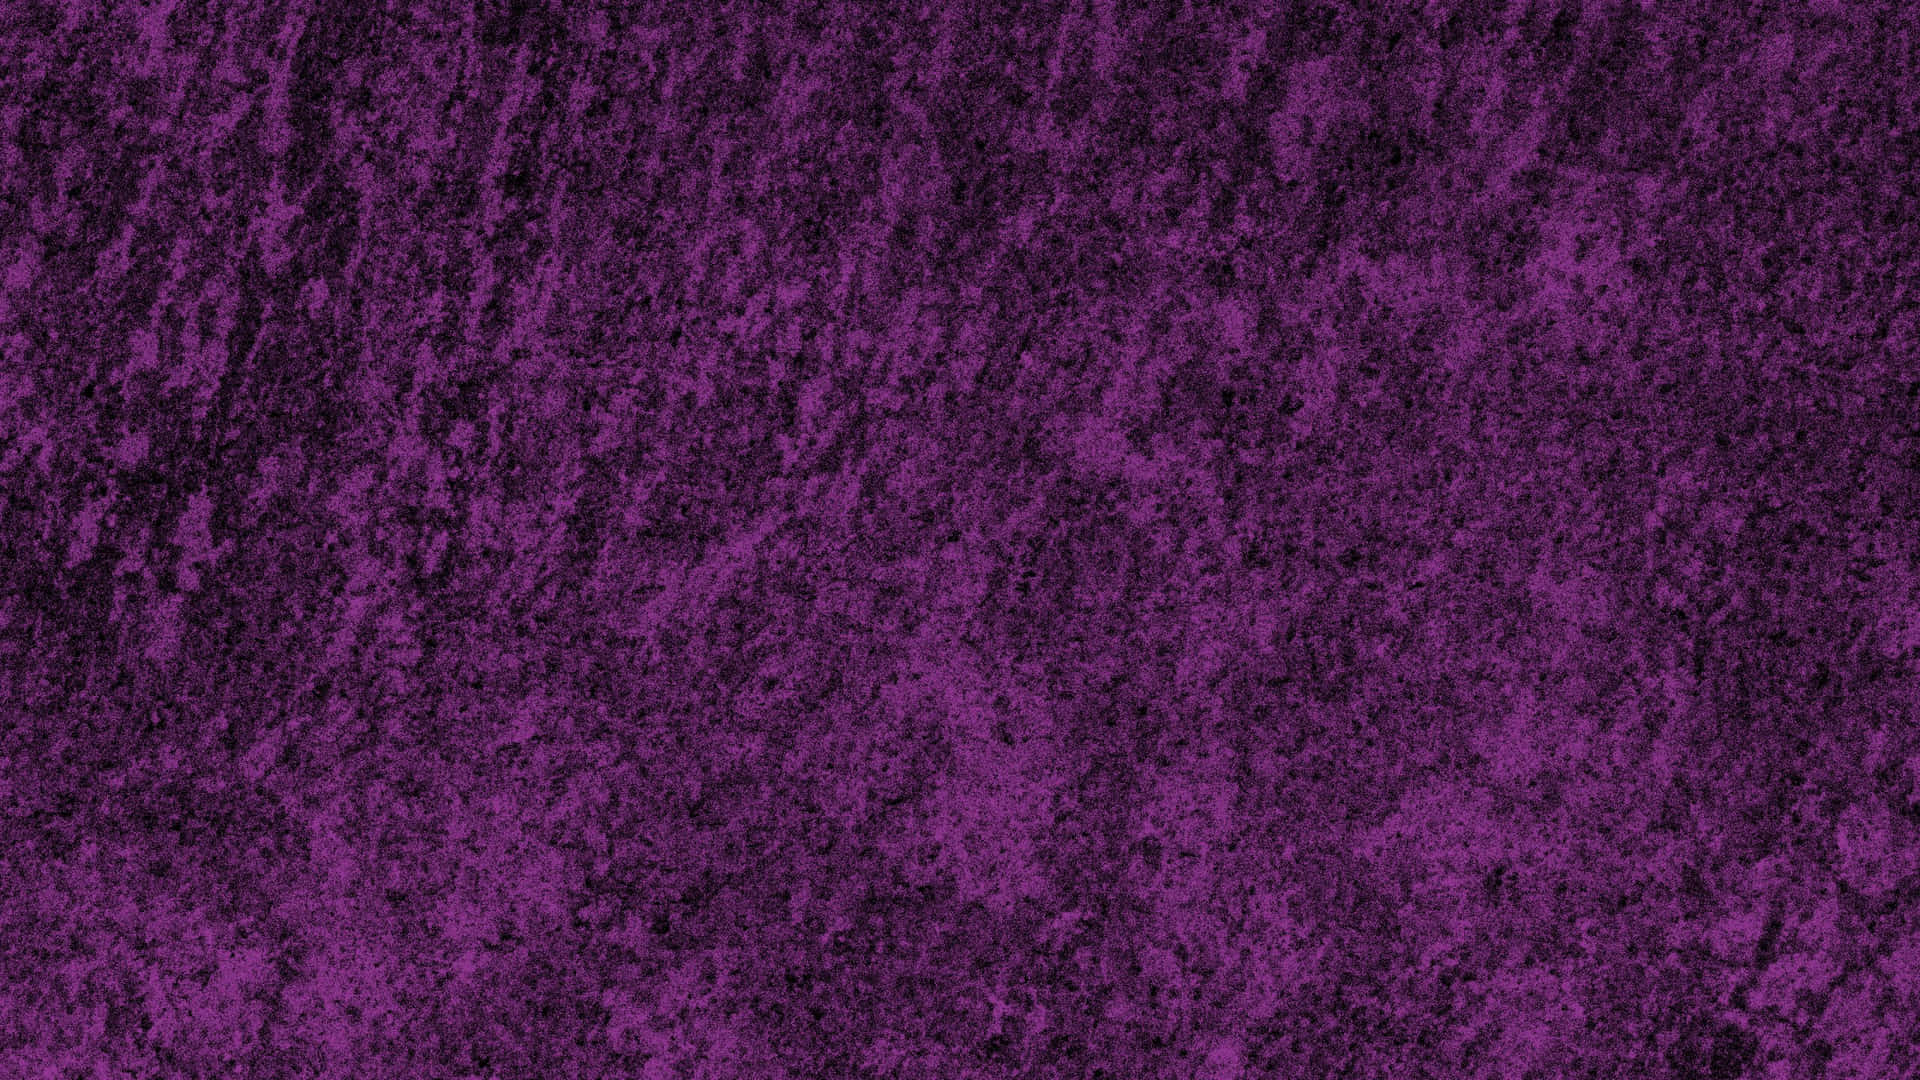 "A dazzling purple textured background."